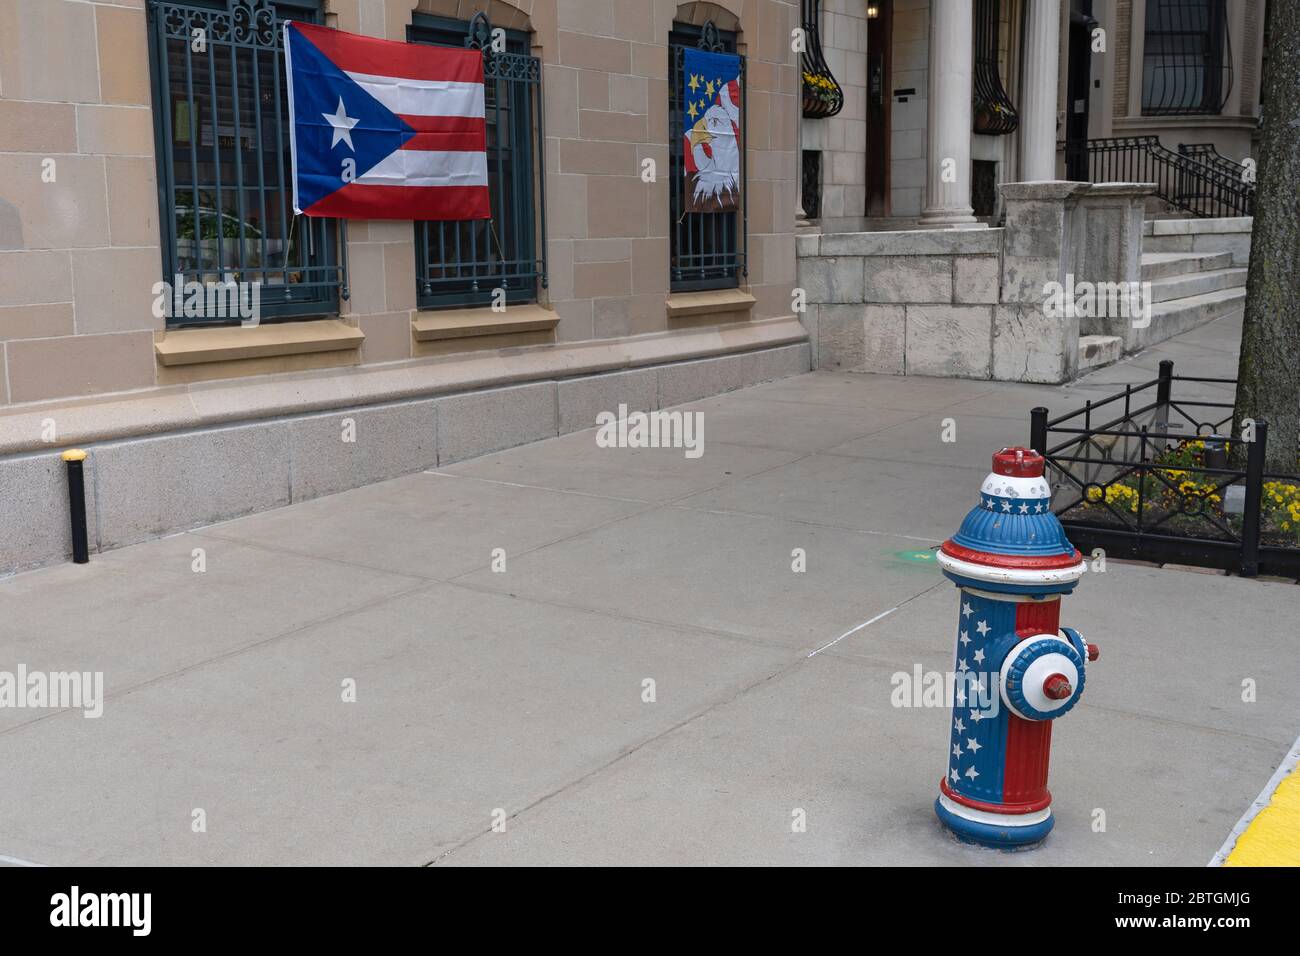 NEW YORK, NEW YORK - 25 MAI 2020 : Raymond Miranda affiche les drapeaux américains et portoricains le week-end du Memorial Day à l'extérieur de son appartement. Banque D'Images